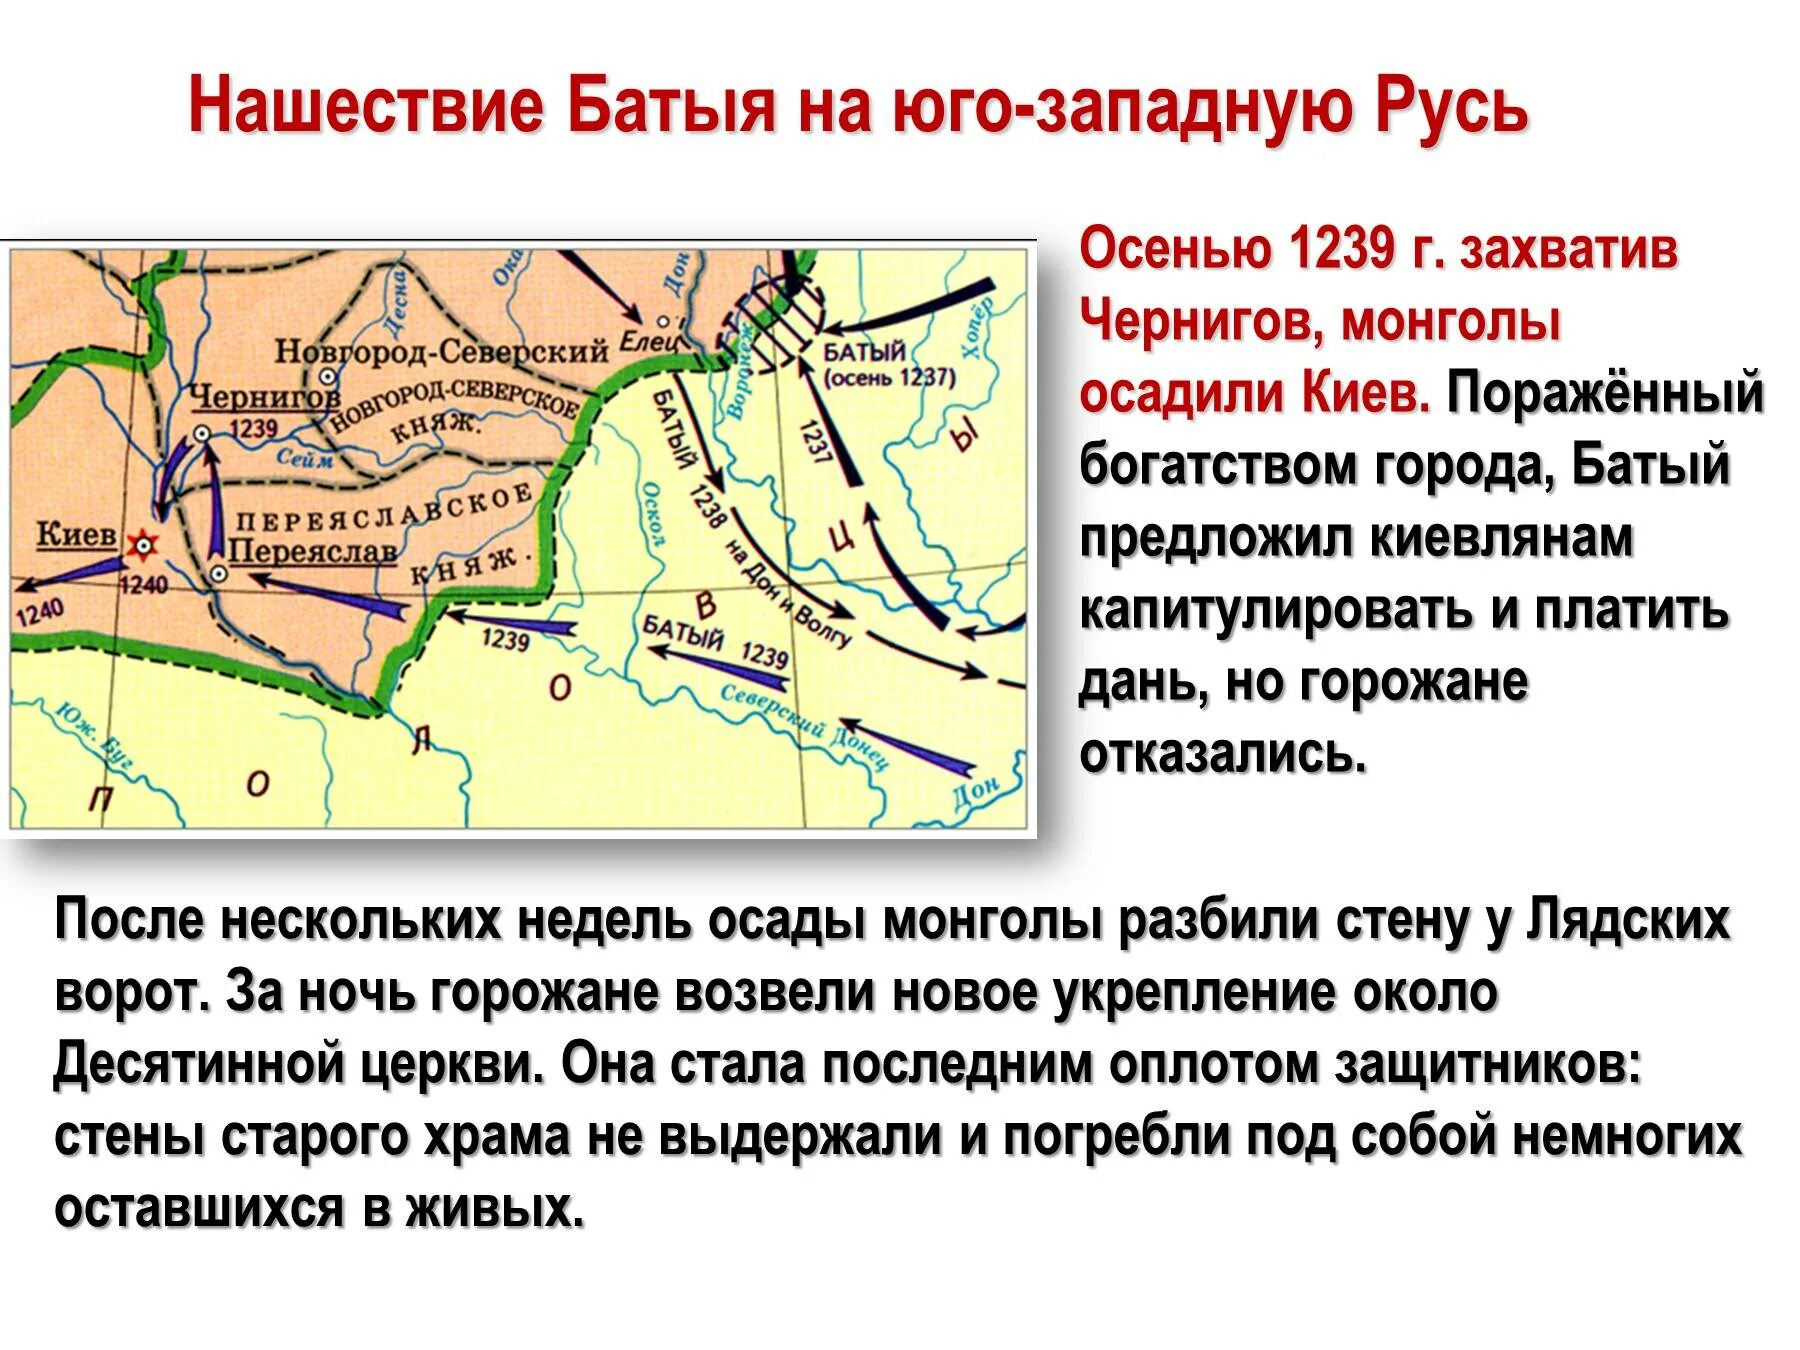 Нашествие монголов на русь возглавлял. Нашествие хана Батыя 1237. Поход Батыя на Северо-восточную Русь. Поход Батыя на Юго-западную Русь. Нашествие Батыя на Юго-западную Русь.